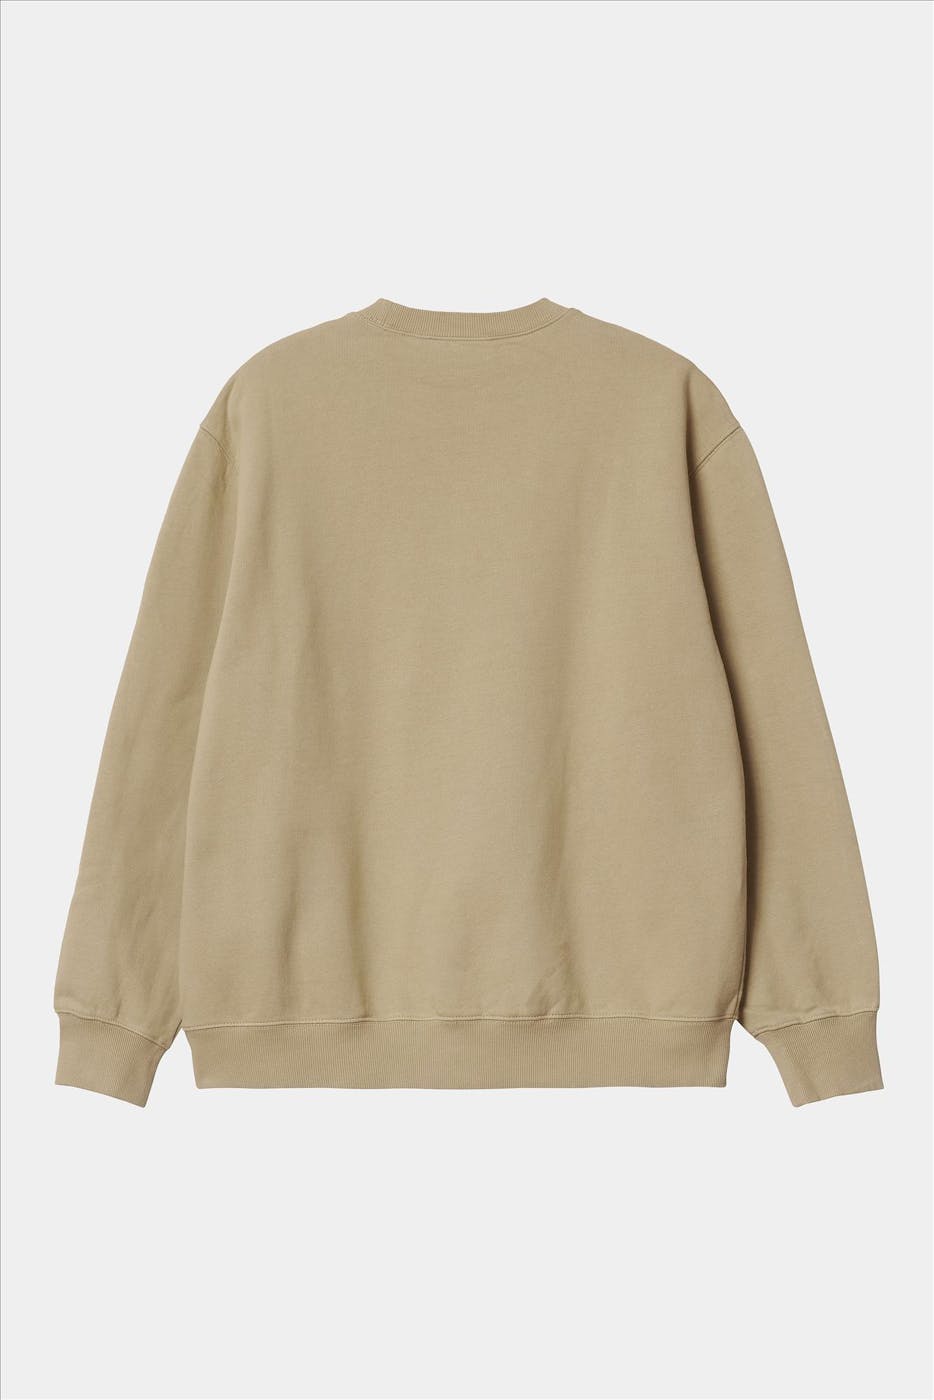 Carhartt WIP - Beige Pocket sweater